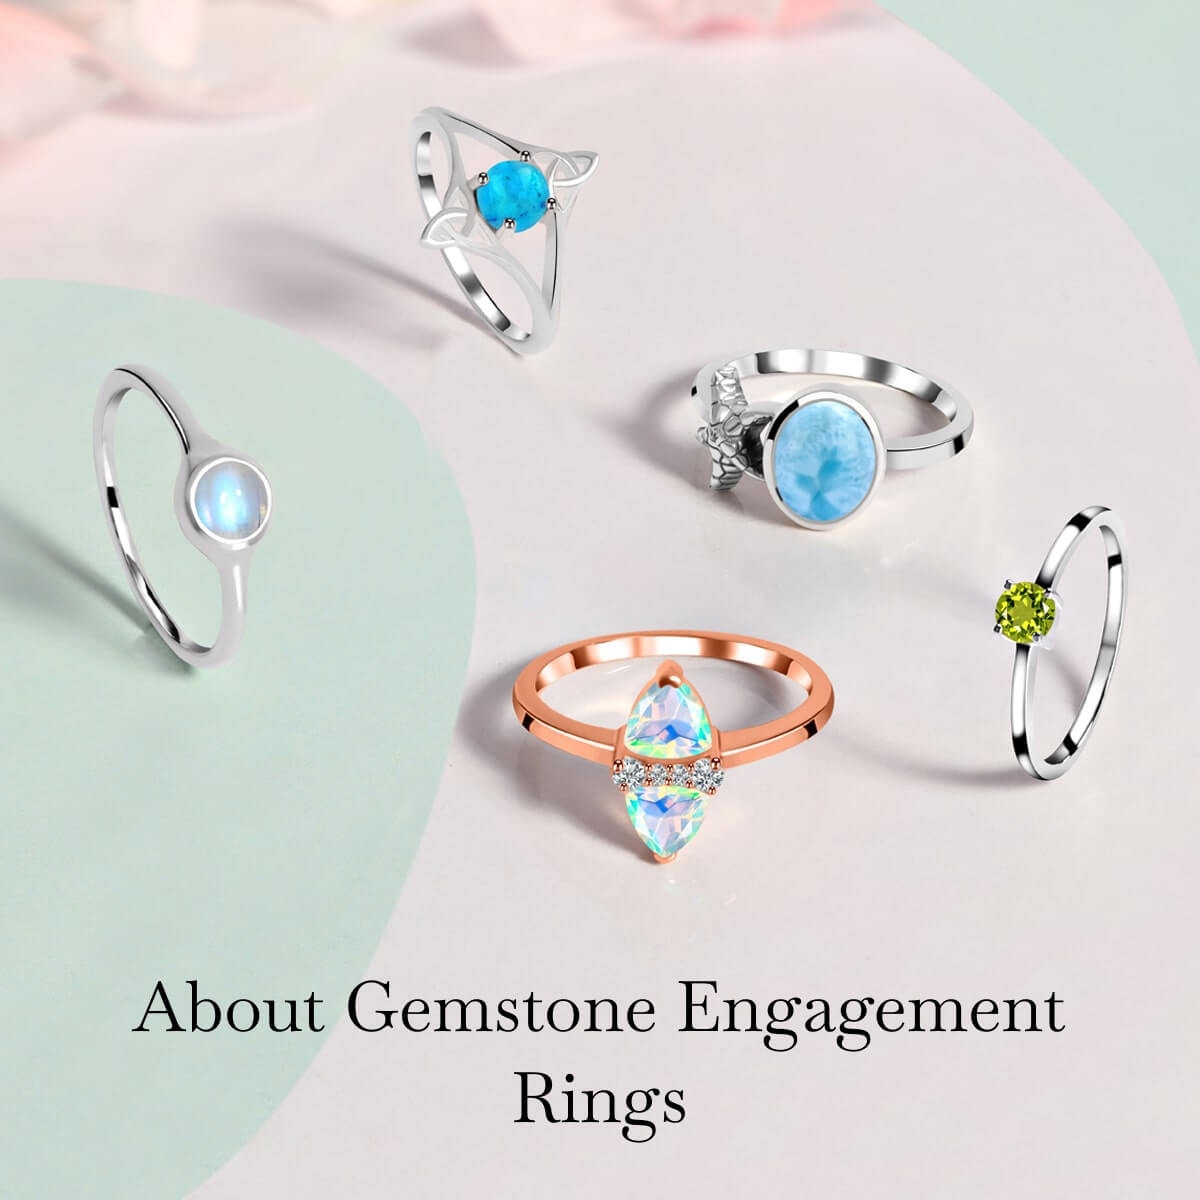 Seven Gemstones for Engagement Rings